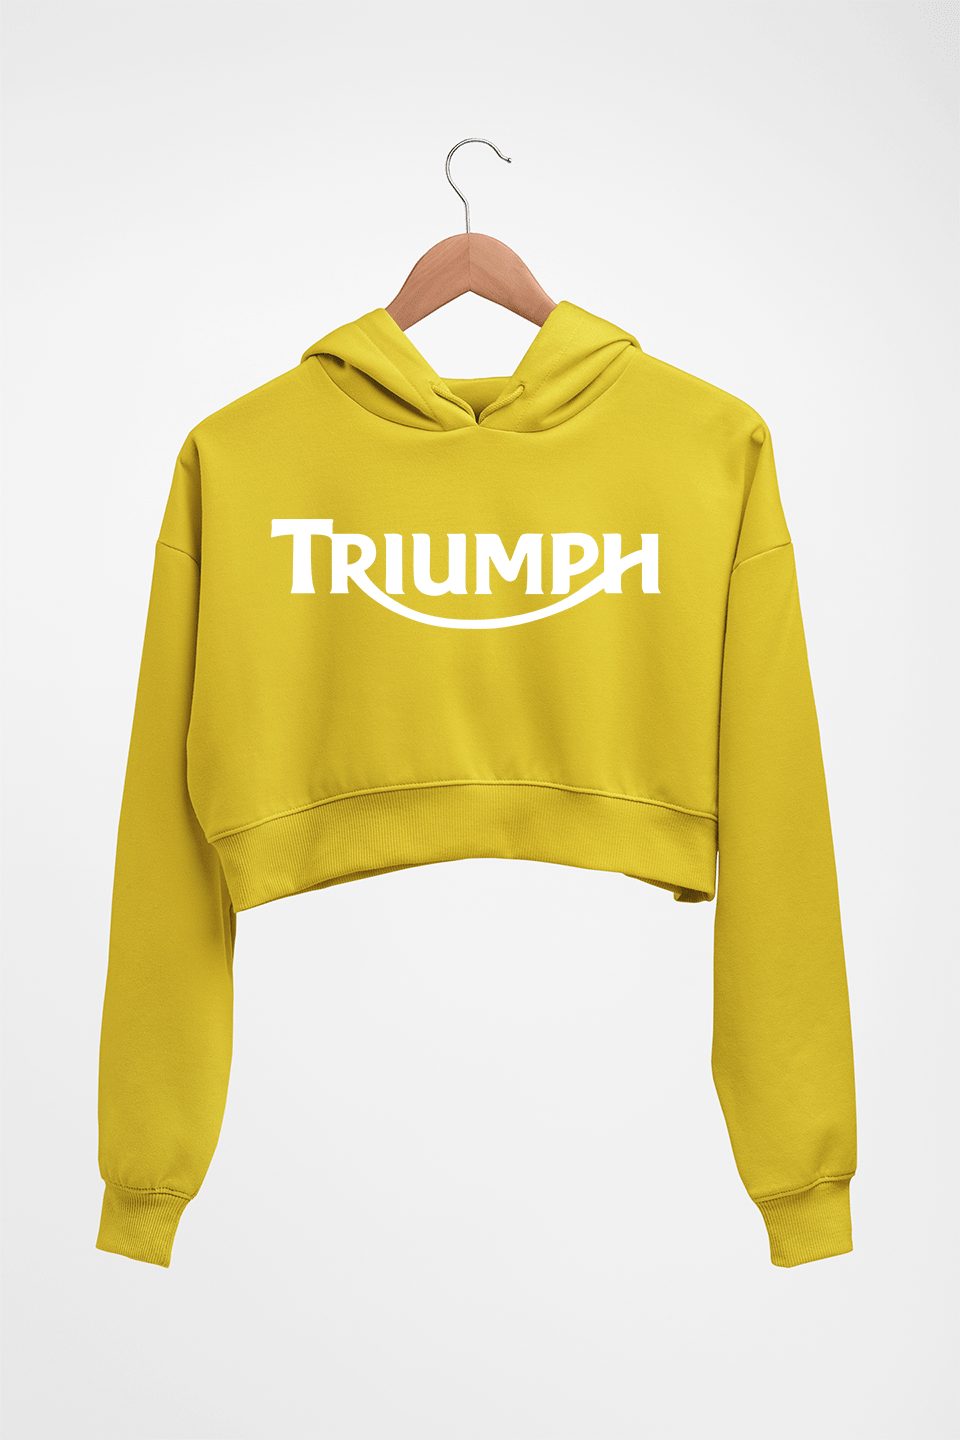 Triumph Crop HOODIE FOR WOMEN